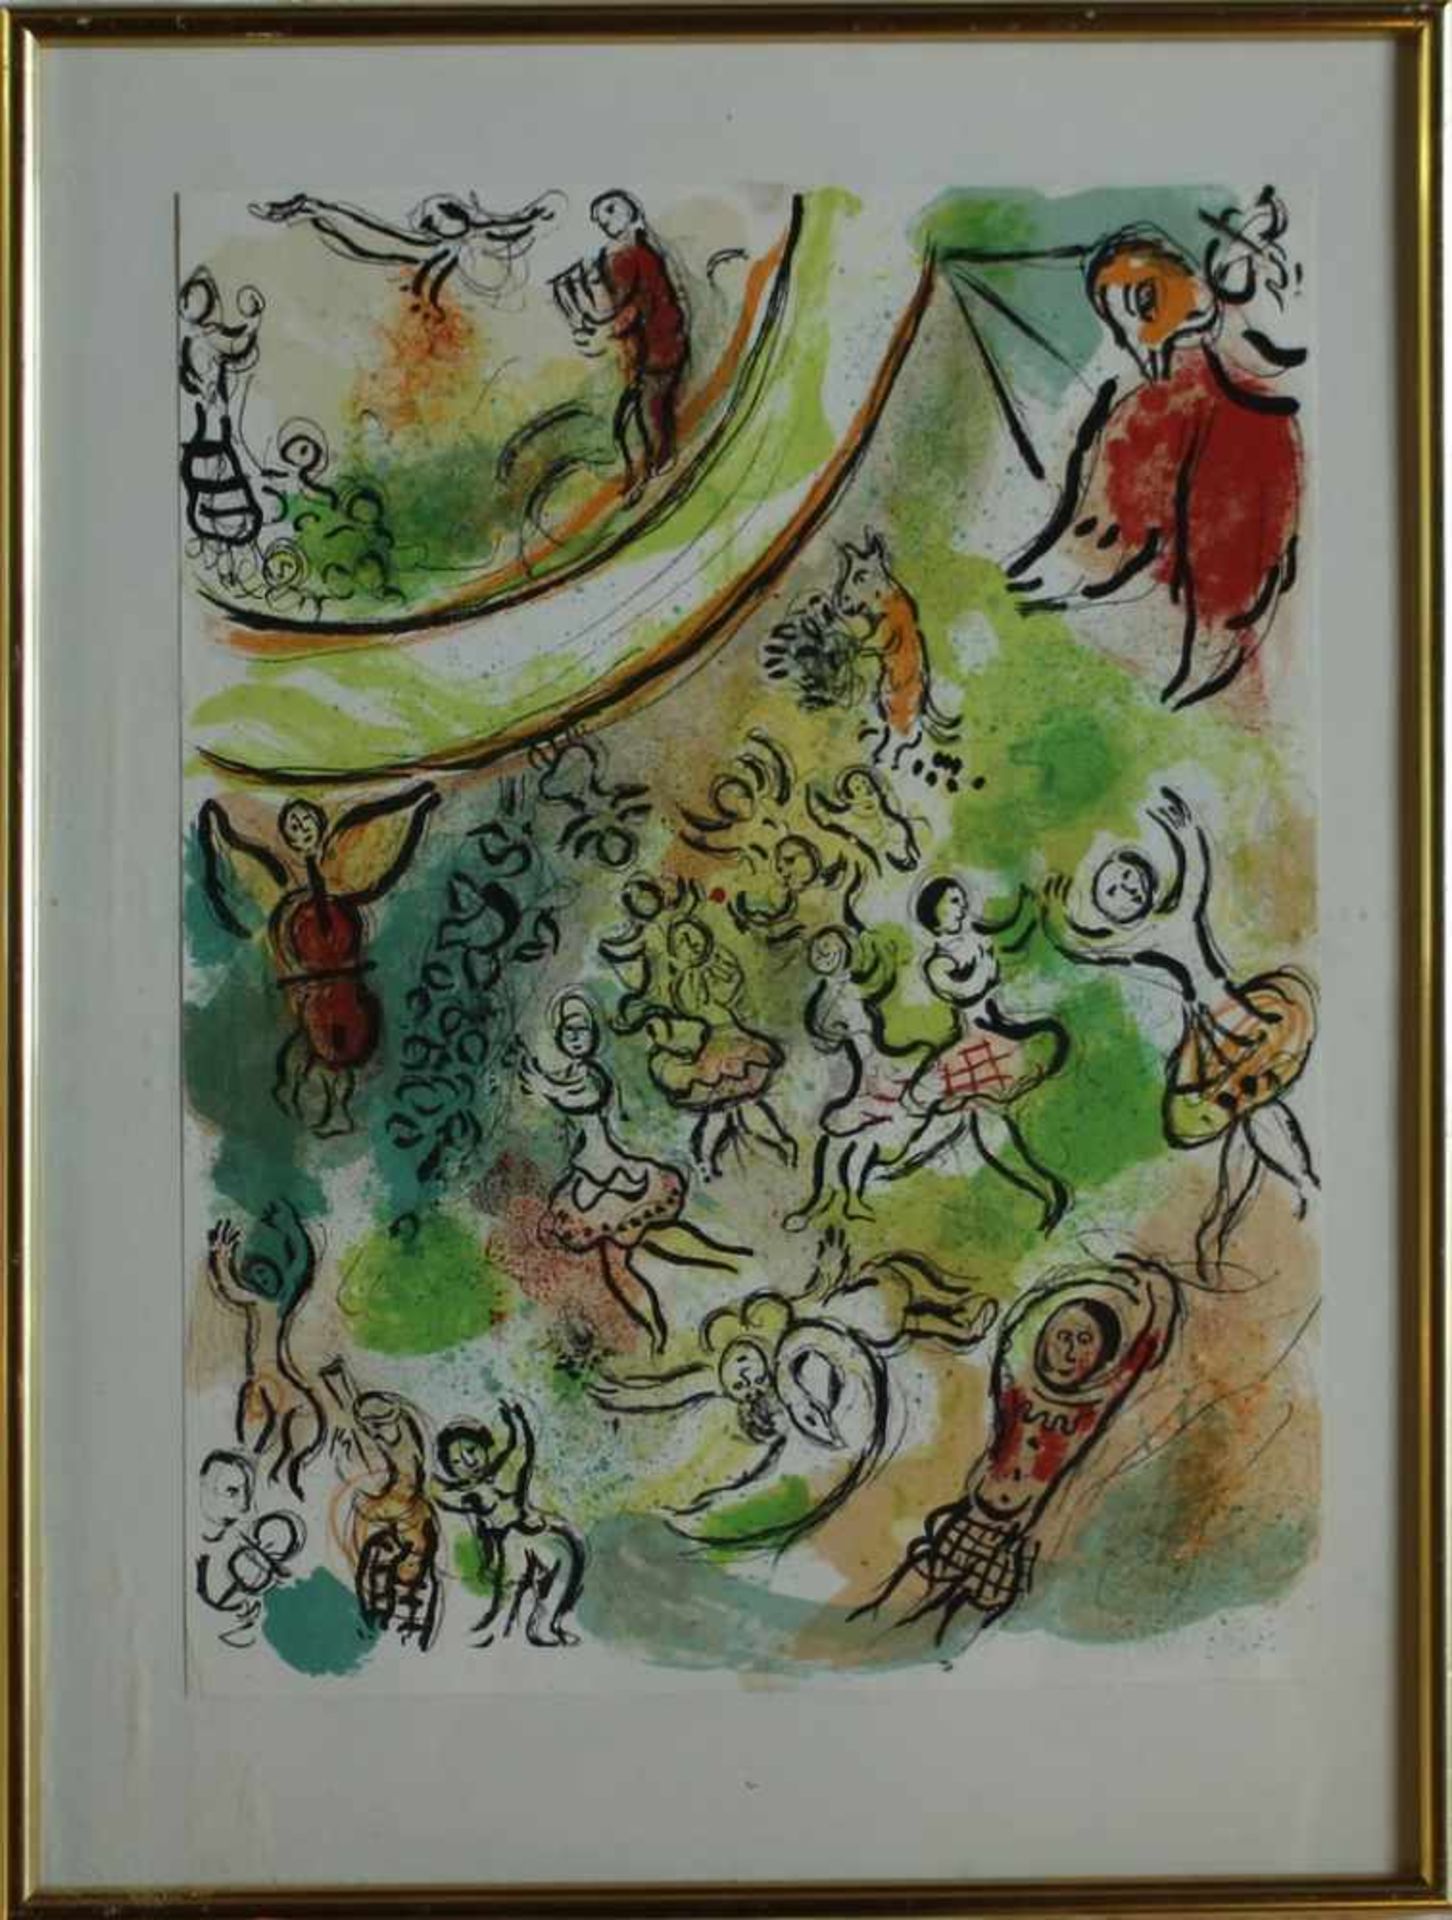 Chagall, Marc1887 Witebsk-1985 St. Paul de Vence, "Reliefen de l'opera", Farblitho., heitere Szene